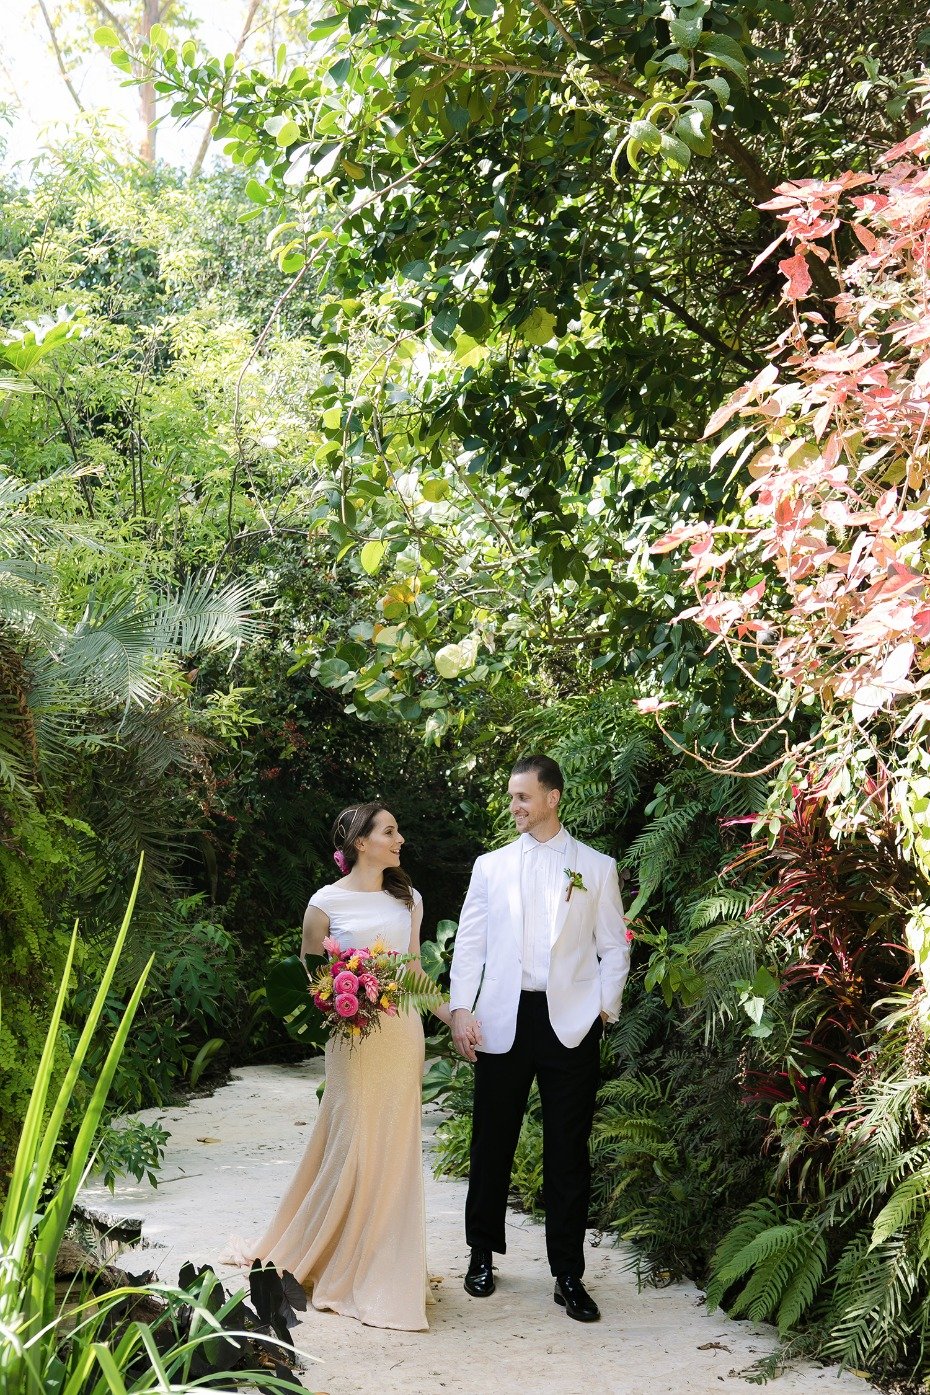 taking a tropical wedding walk